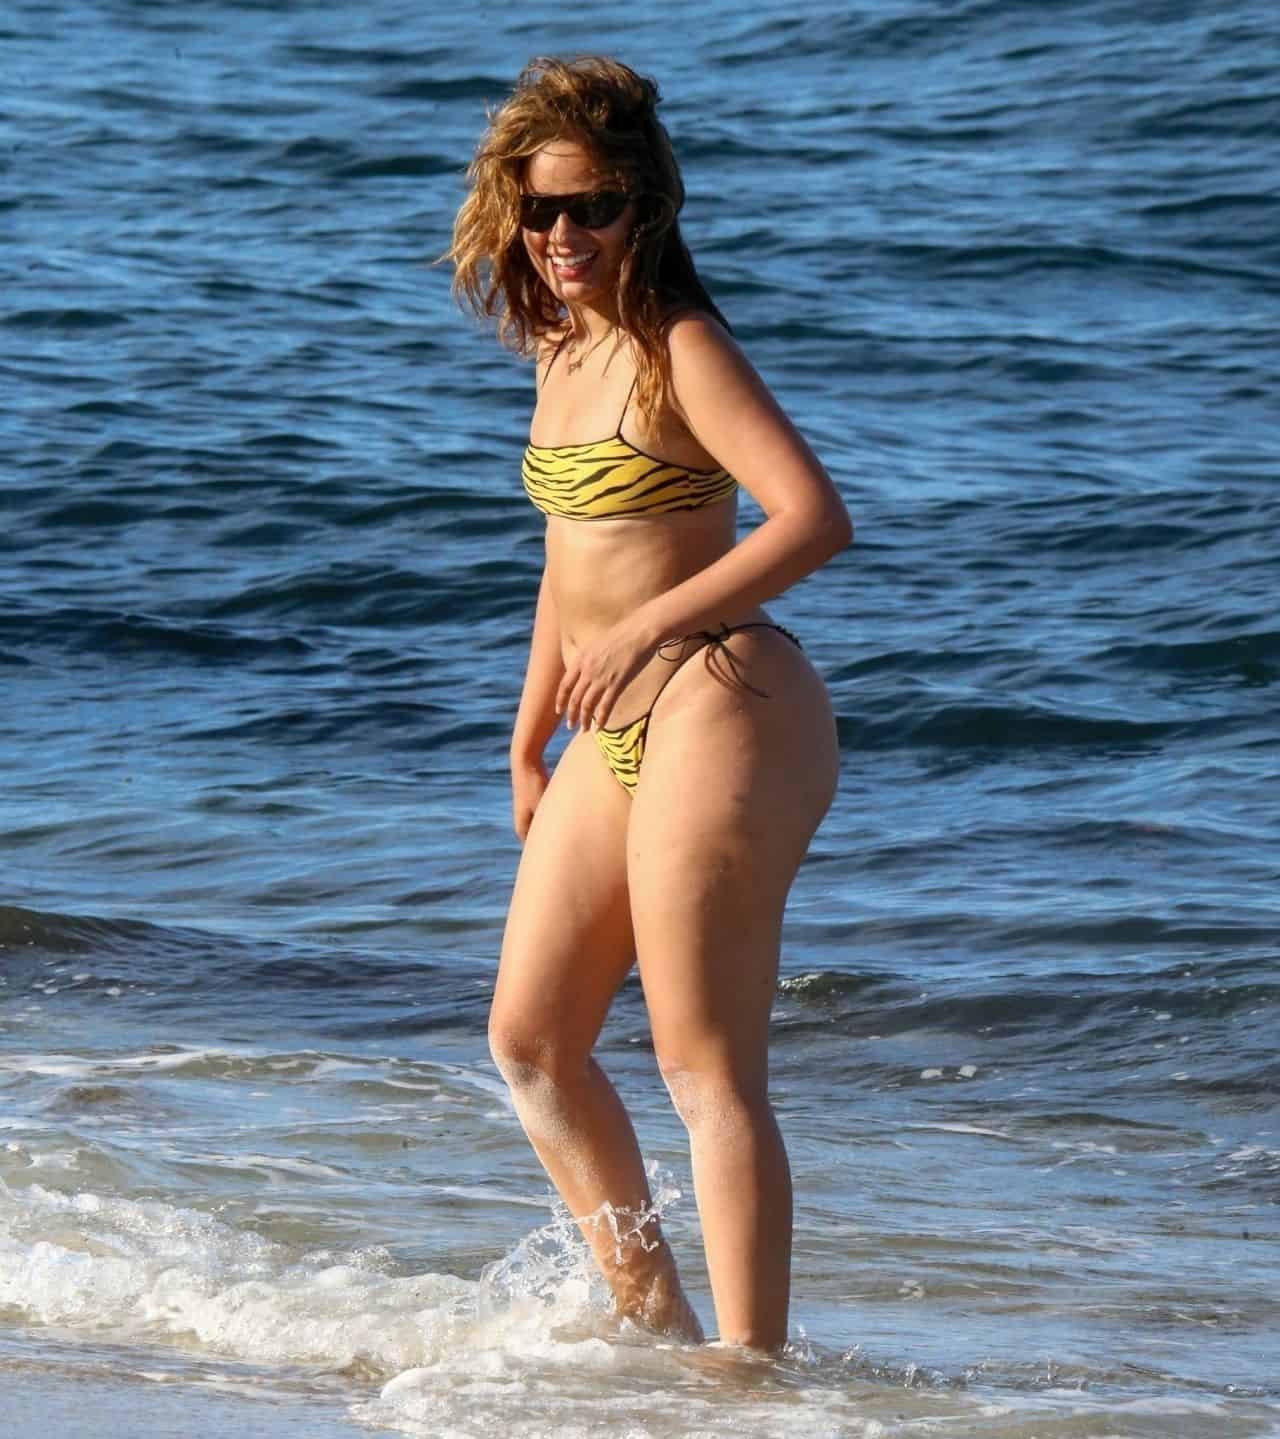 Camila Cabello Stuns in a Yellow Cheeky Bikini at a Beach in Coral Gables